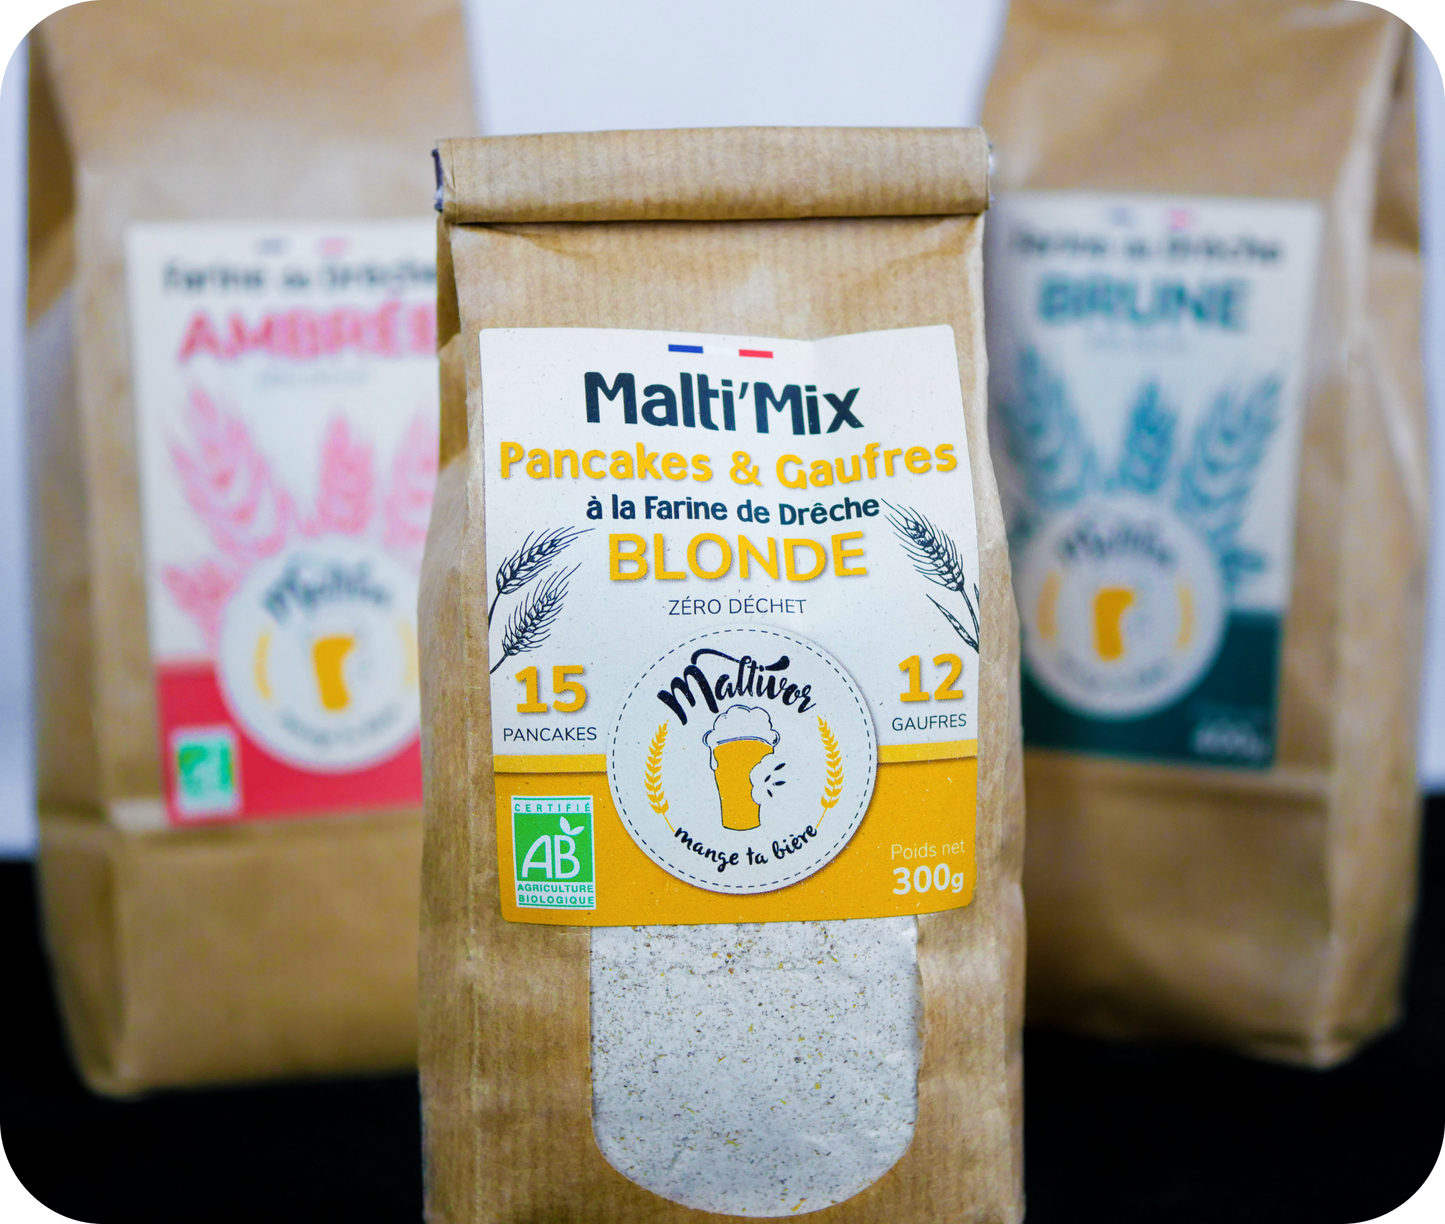 Sachet de Malti’Mix pour Pancakes & Gaufres Maltivor entouré de sachets de farine de drêche ambrée maltivor et de farine de drêche brune maltivor